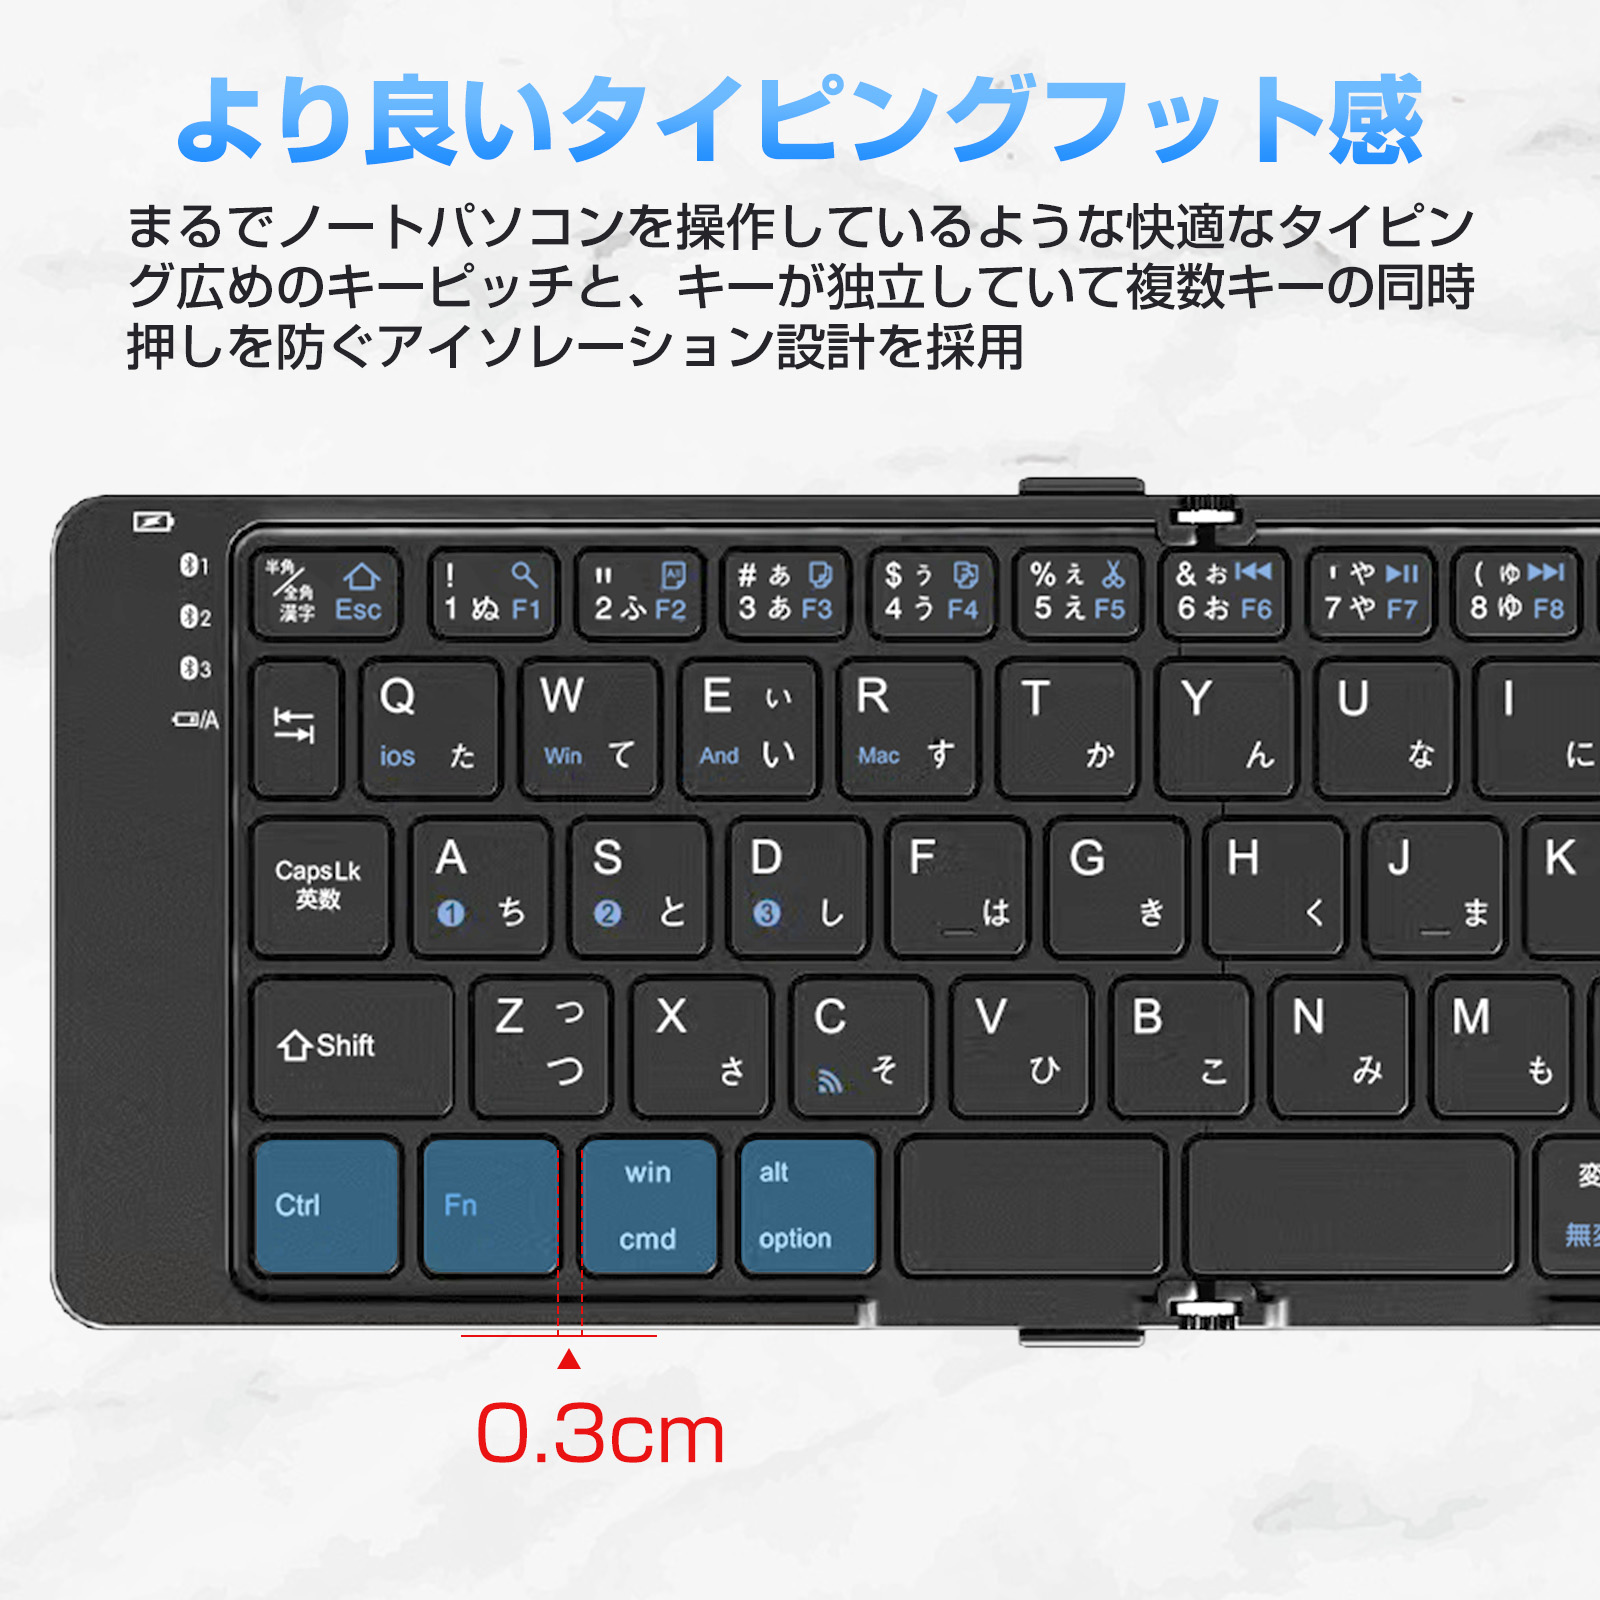 Bluetooth キーボード 折りたたみ 日本語配列 iPad ブルートゥース キーボード ワイヤレスキーボード スマホスタンド付き 小型  Mac/iOS/Android/Windows対応